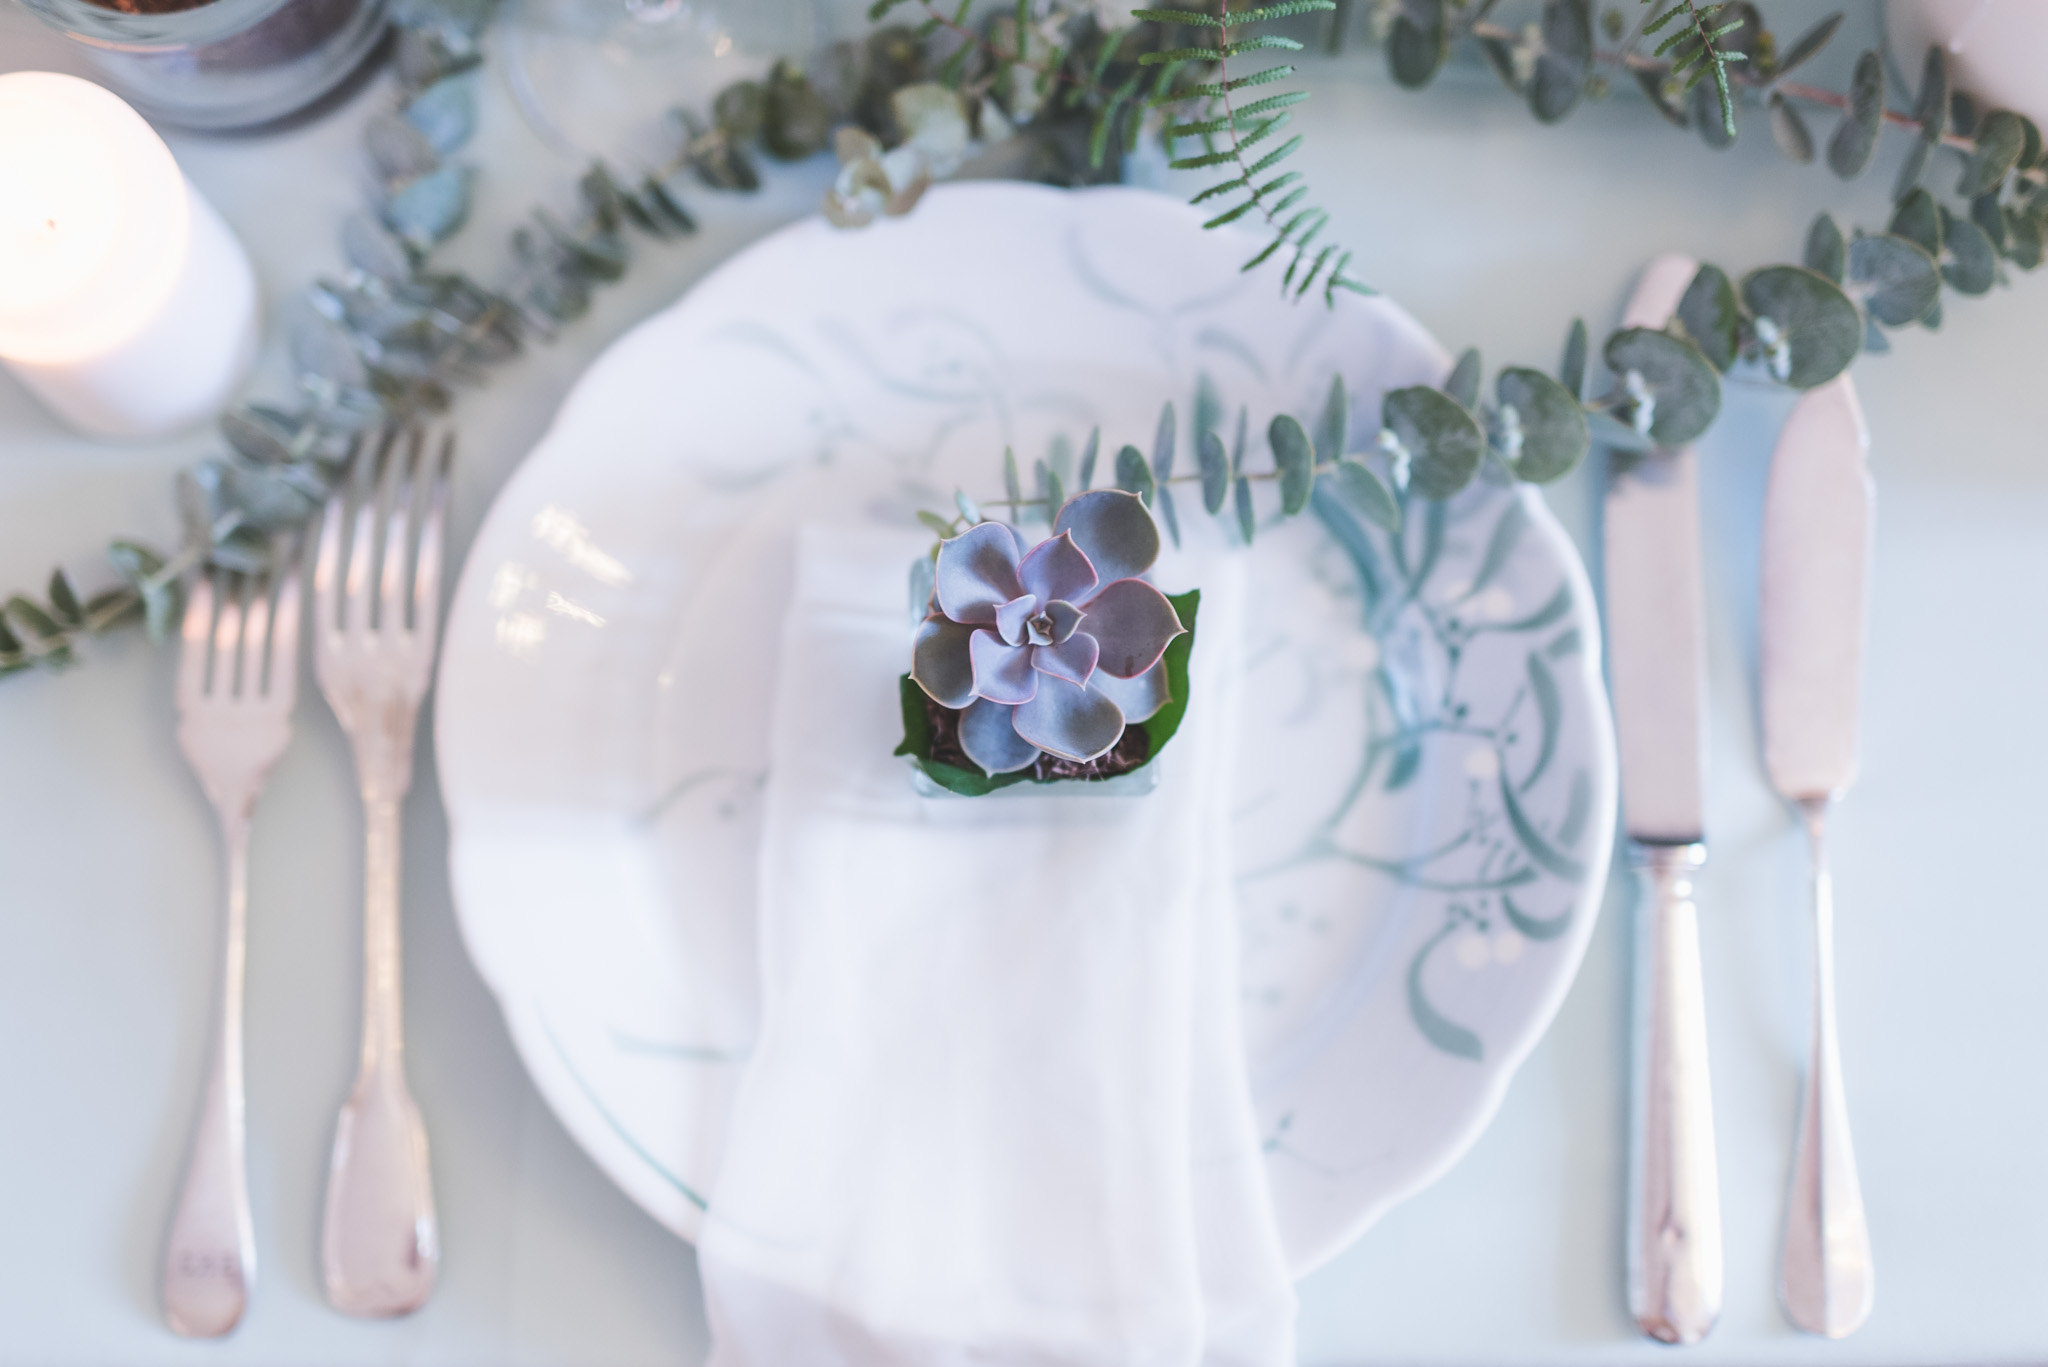 Décoration et composition florale de la réception et des tables de mariage lors de ce shooting champêtre.